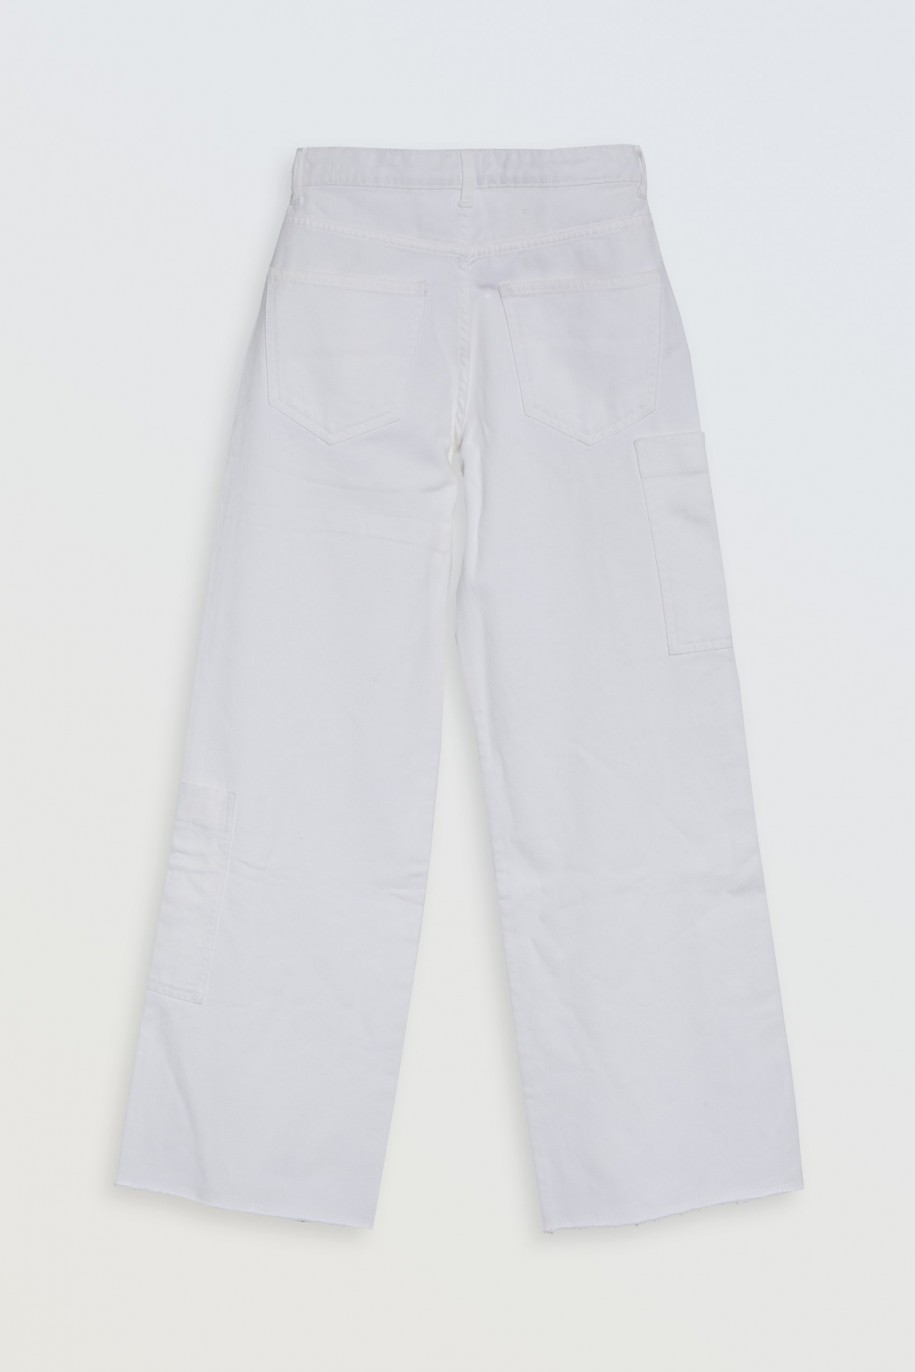 Białe jeansy typu WIDE LEG z asymetrycznymi kieszeniami na nogawkach - 46557